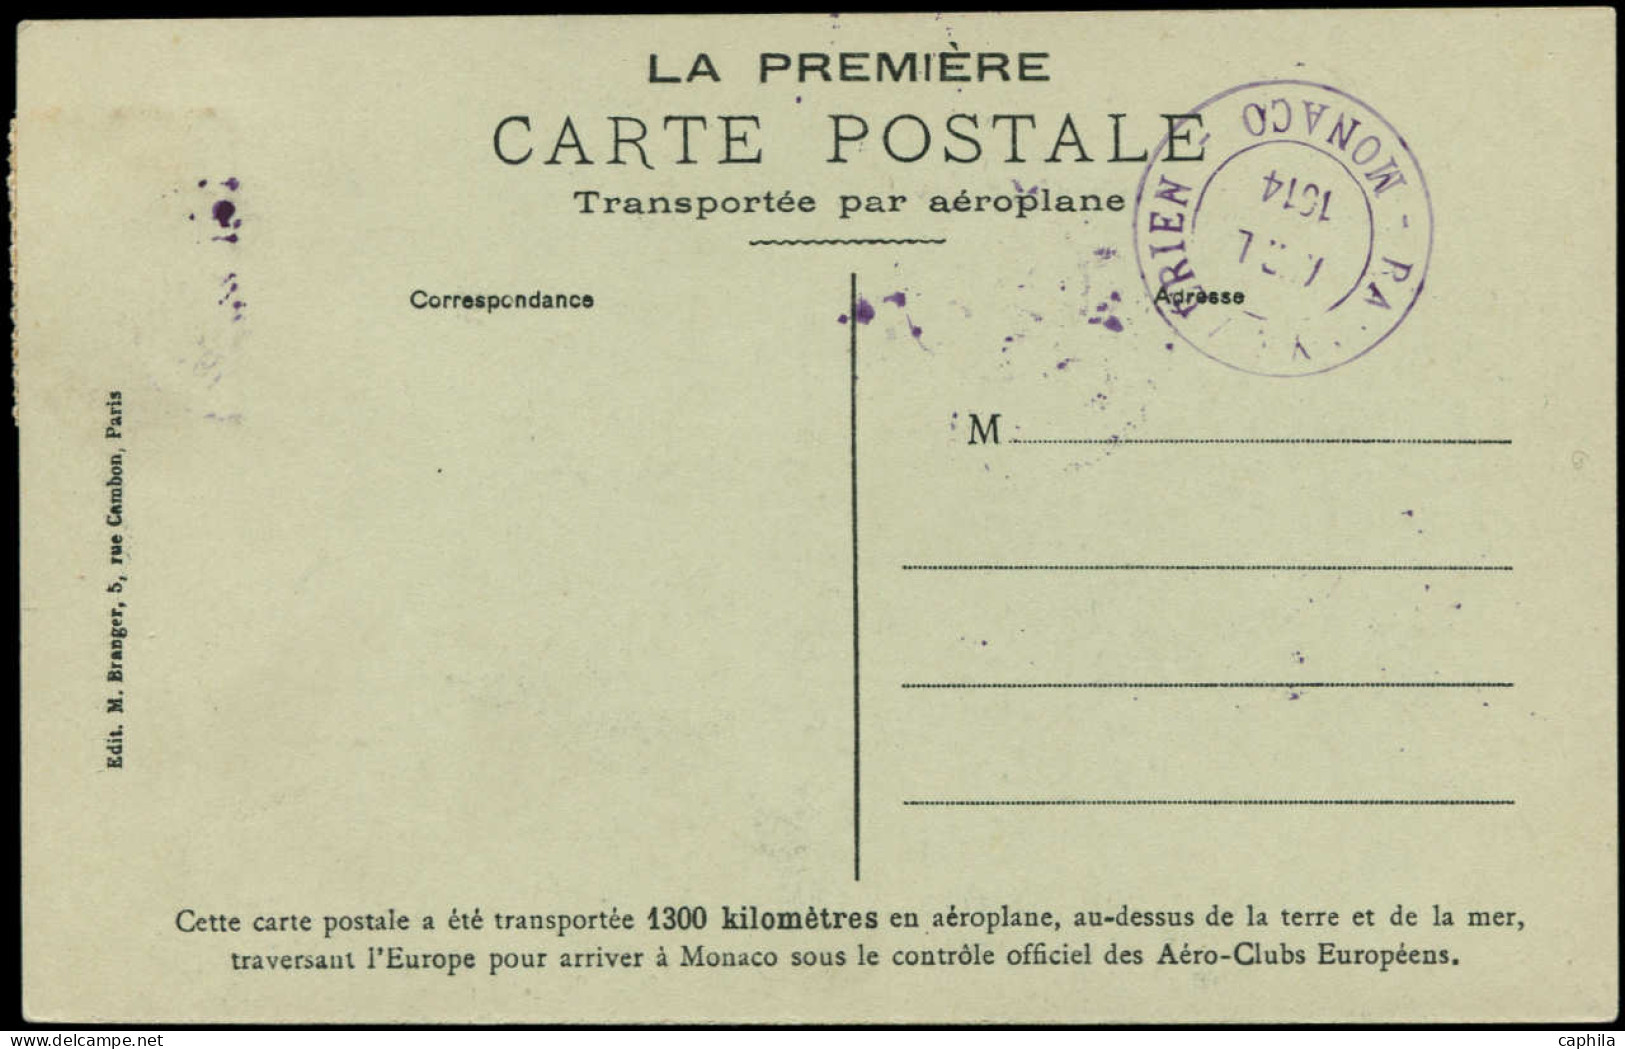 CP MONACO - Poste Aérienne - TS1, Vignette Rallye Aérien Sur CP Madrid à Monaco Arrivée 13/04/1914 (Maury) - Airmail